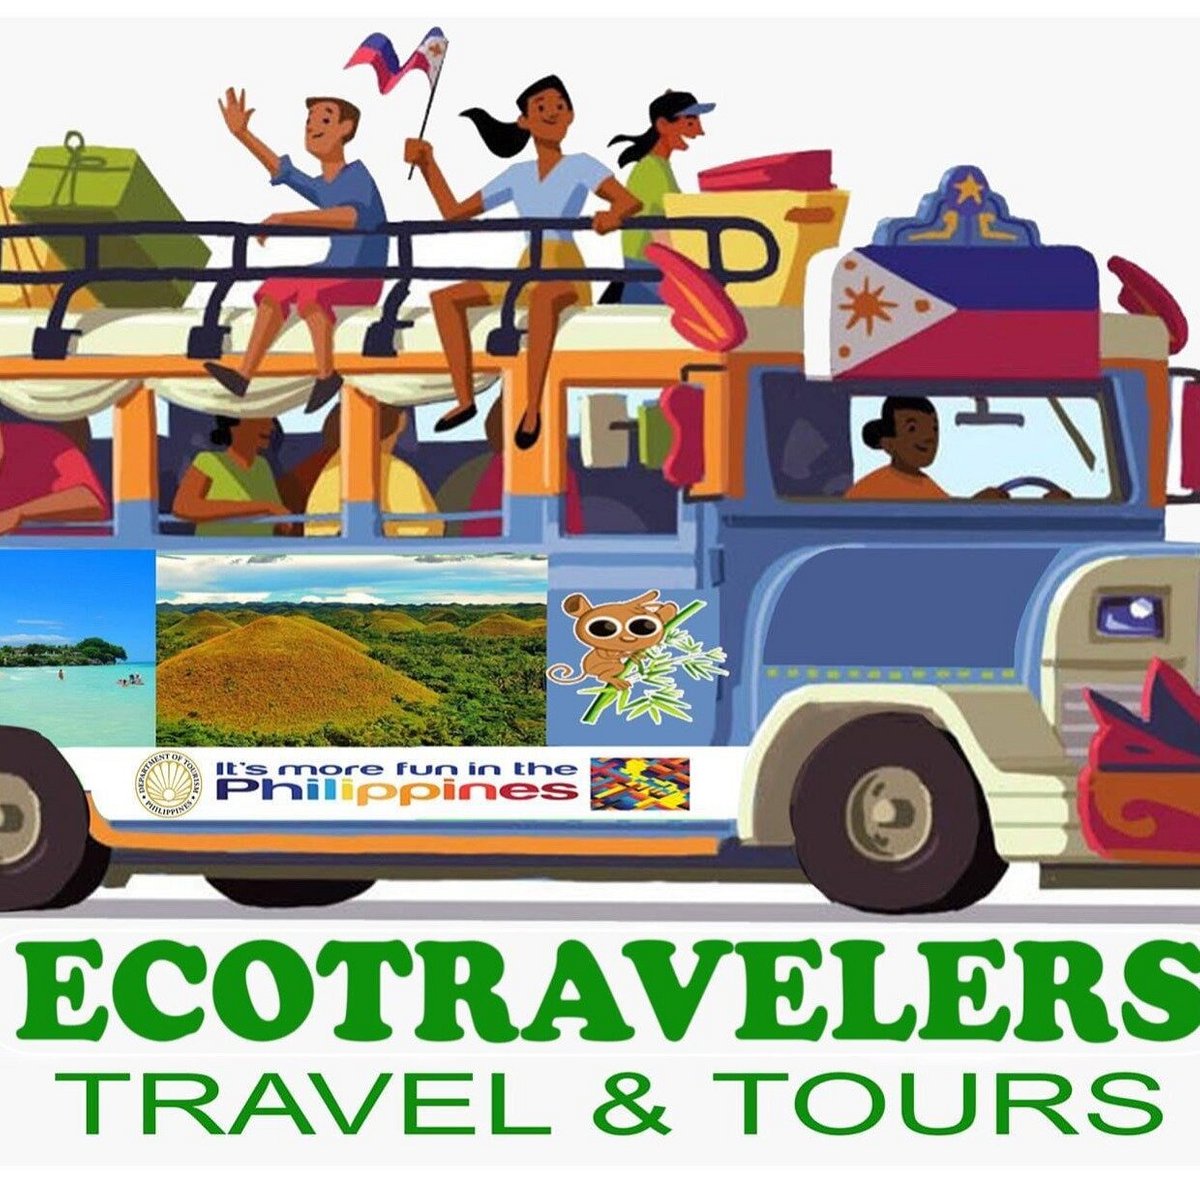 ecotravelers travel & tours bohol